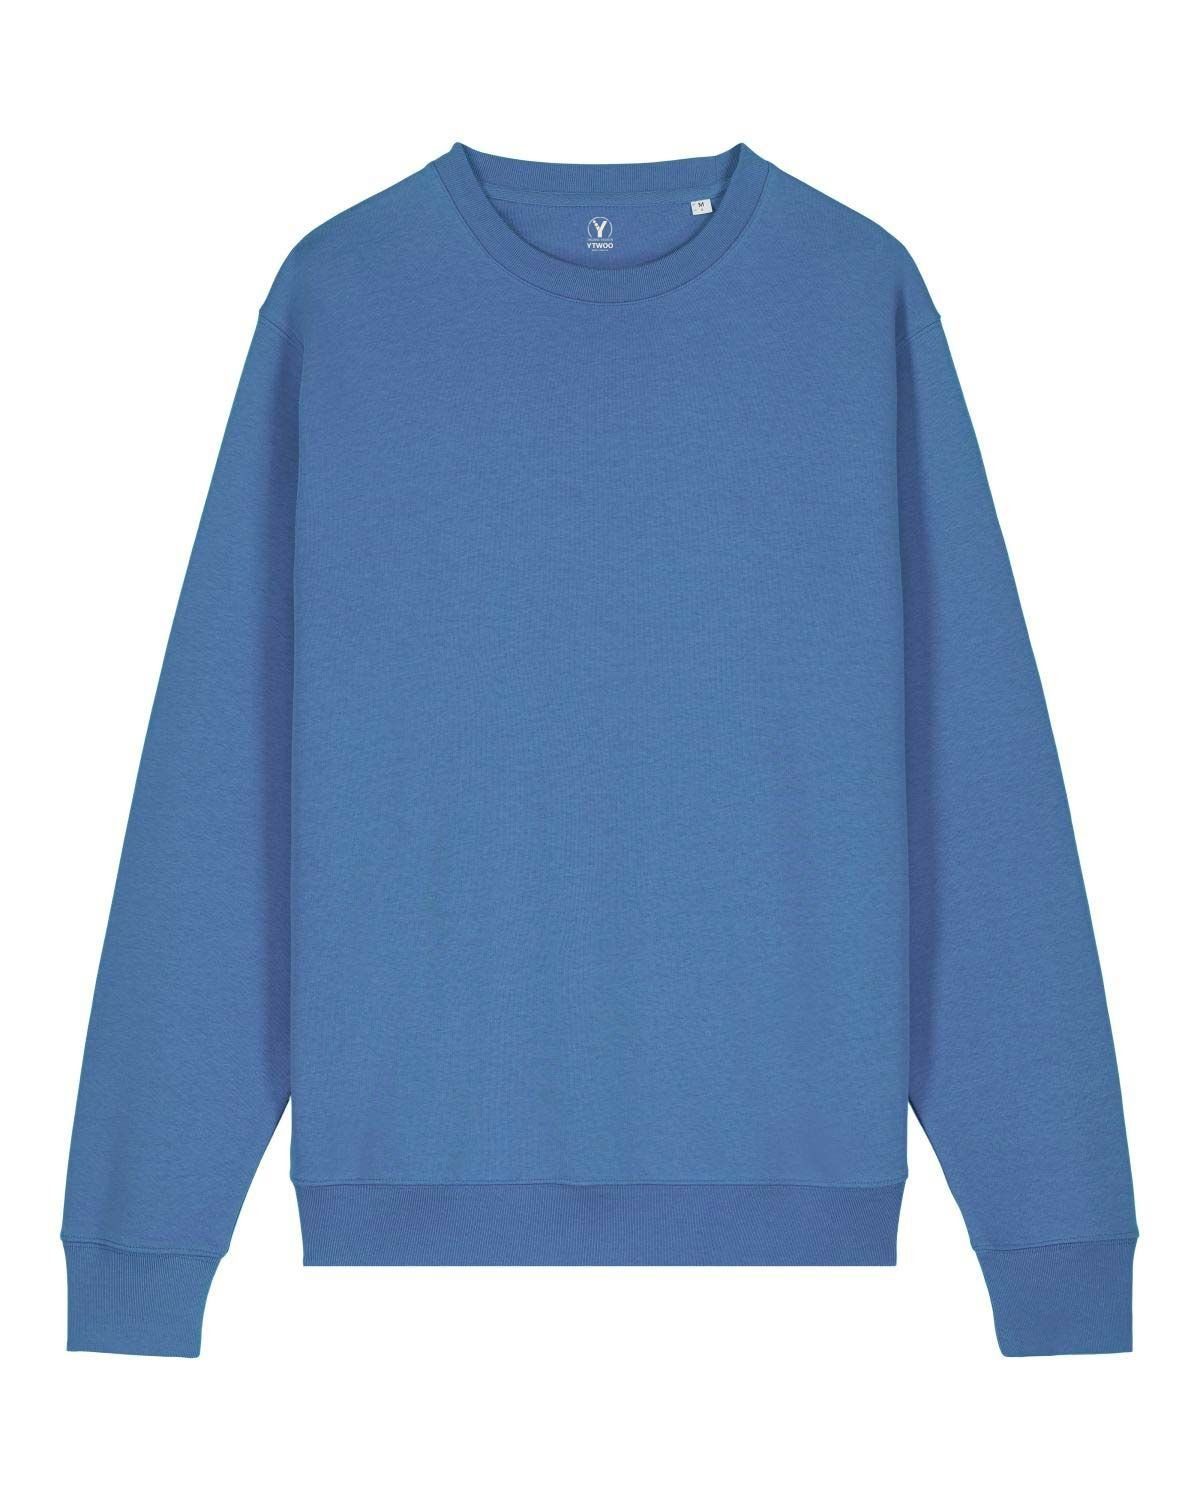 YTWOO Sweatshirt USW.08.BrB.2XL Bright Blue